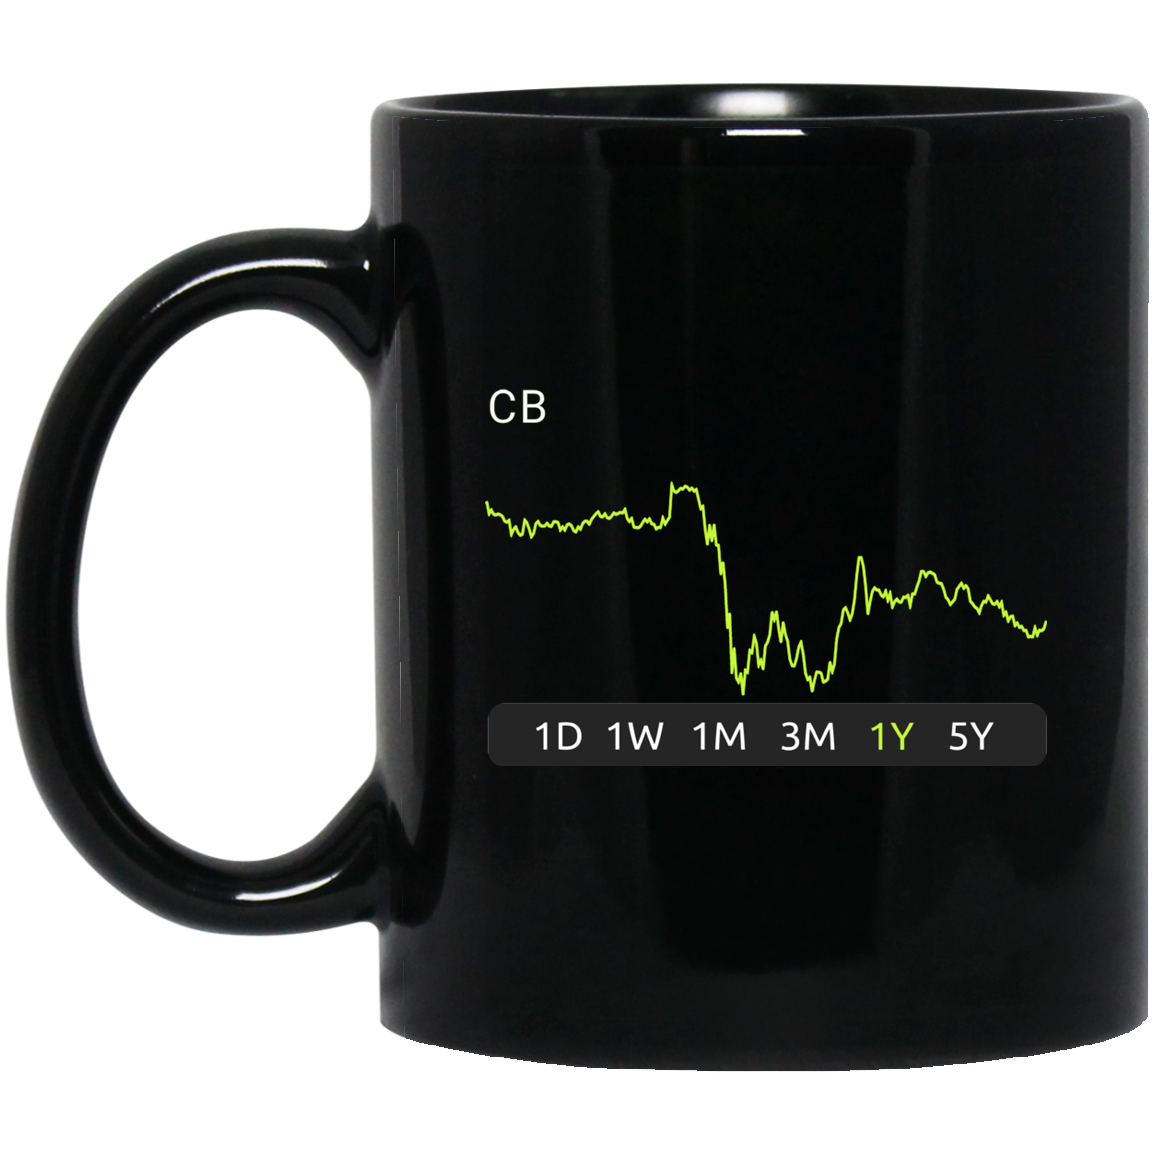 CB Stock 1y Mug